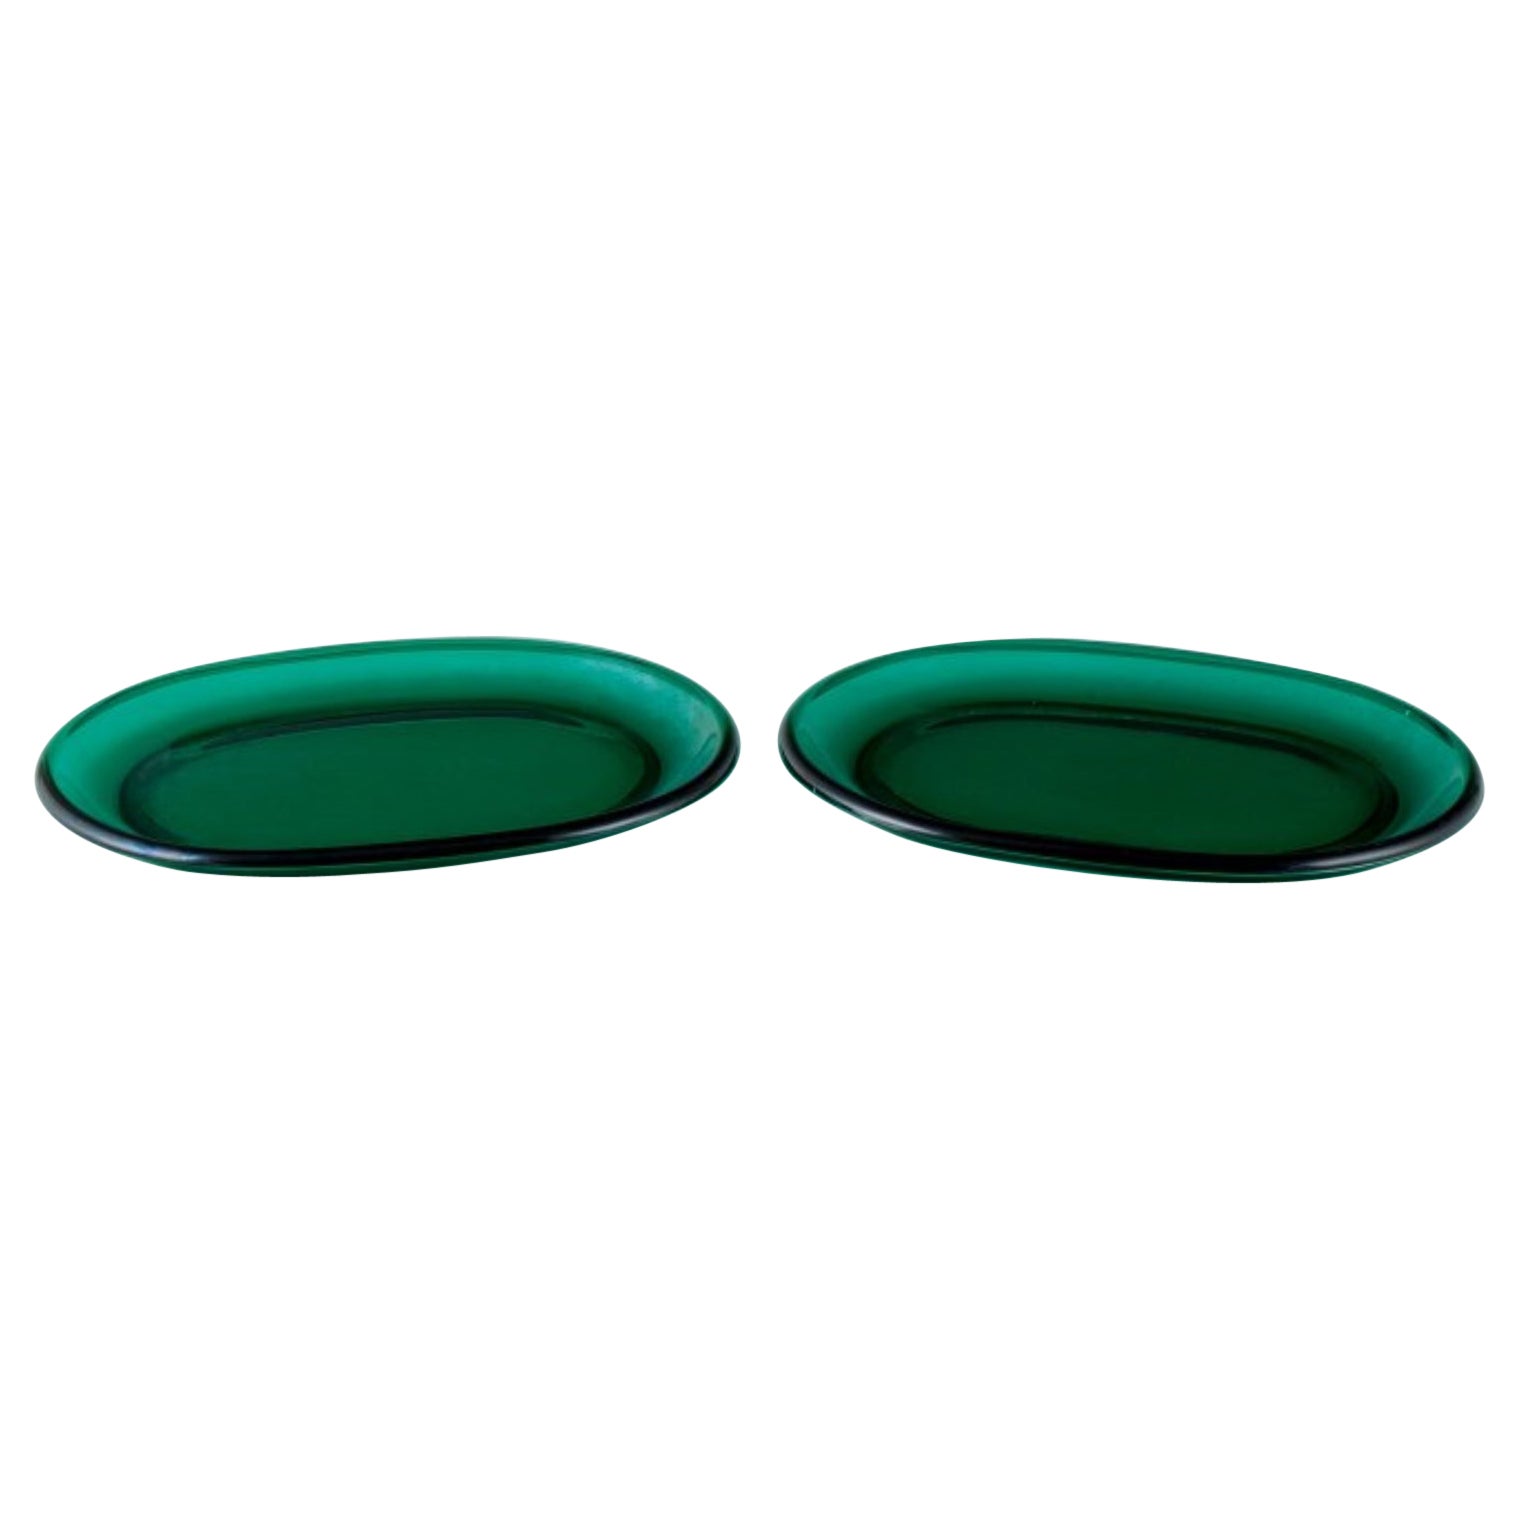 Josef Frank für Reijmyre, Schweden. Zwei Karaffenteller aus grünem Kunstglas.